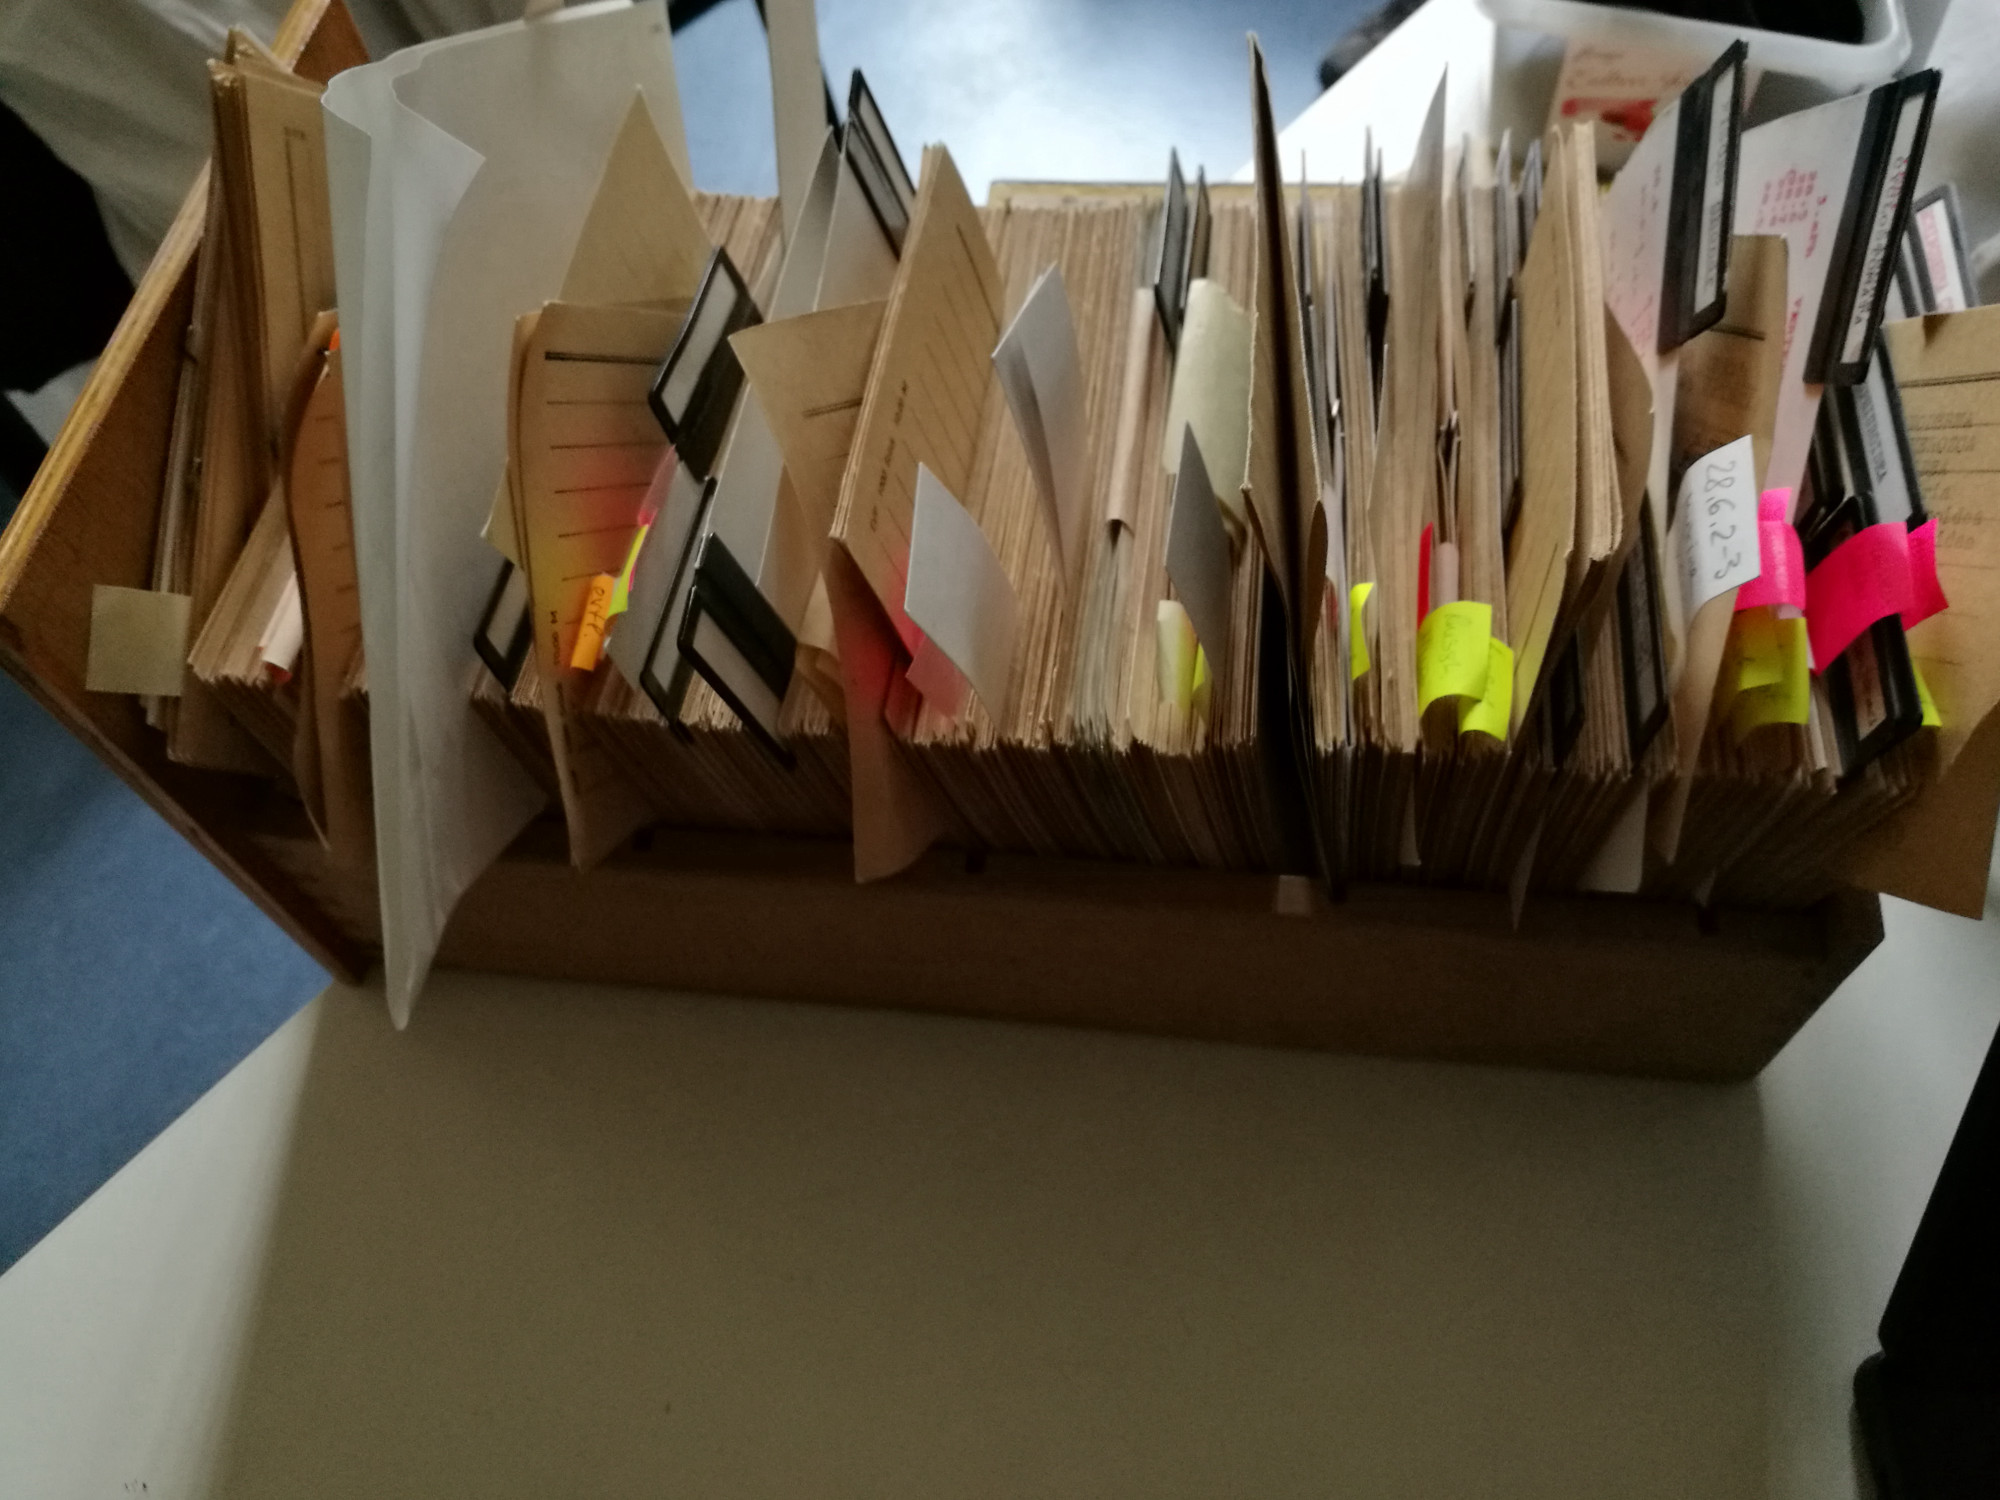 Bild einer von oben aufgenommenen Schublade, die hunderte von aufgereihten Karteikarten enthält. Manche sind durch Post-its sowie weitere Zettel ergänzt und ragen heraus, während die meisten dichtgepackt aufgereiht sind.